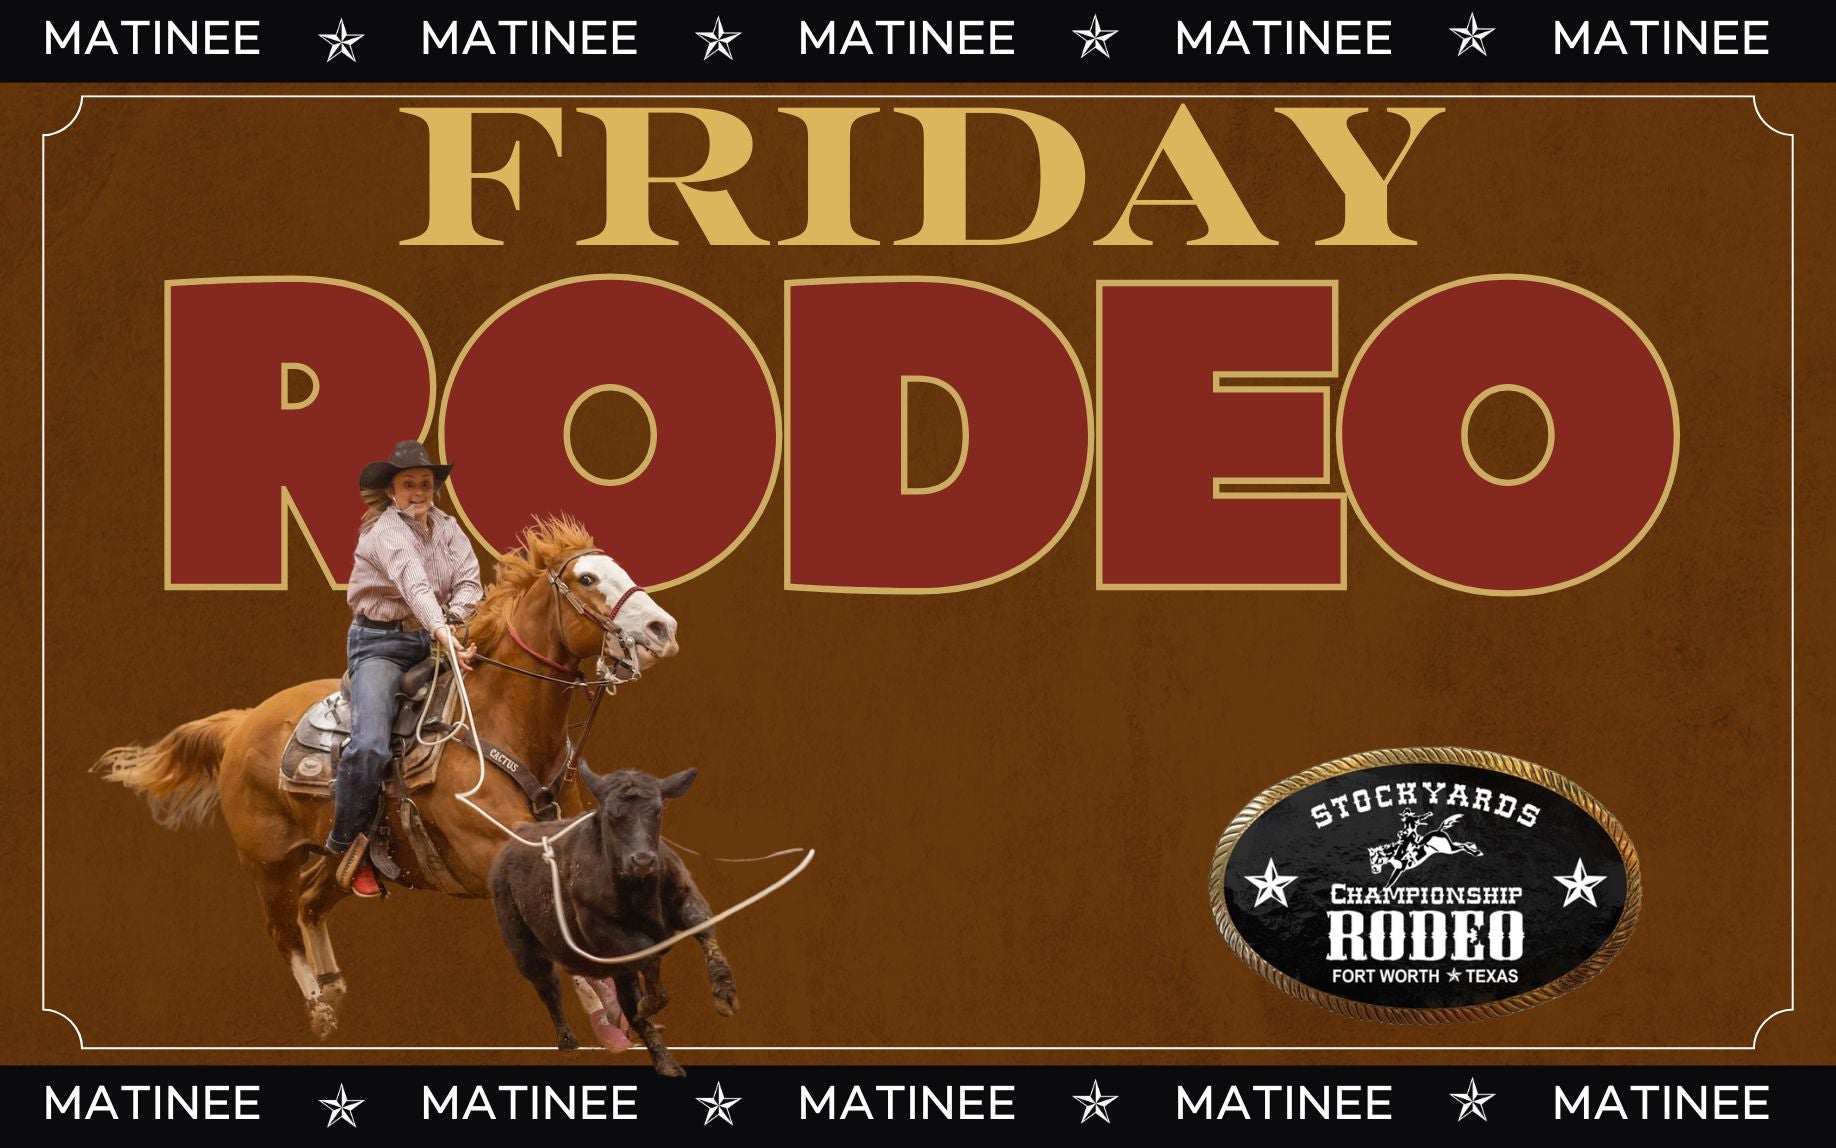 Stockyards Championship Rodeo - Friday 1:30PM MATINEE